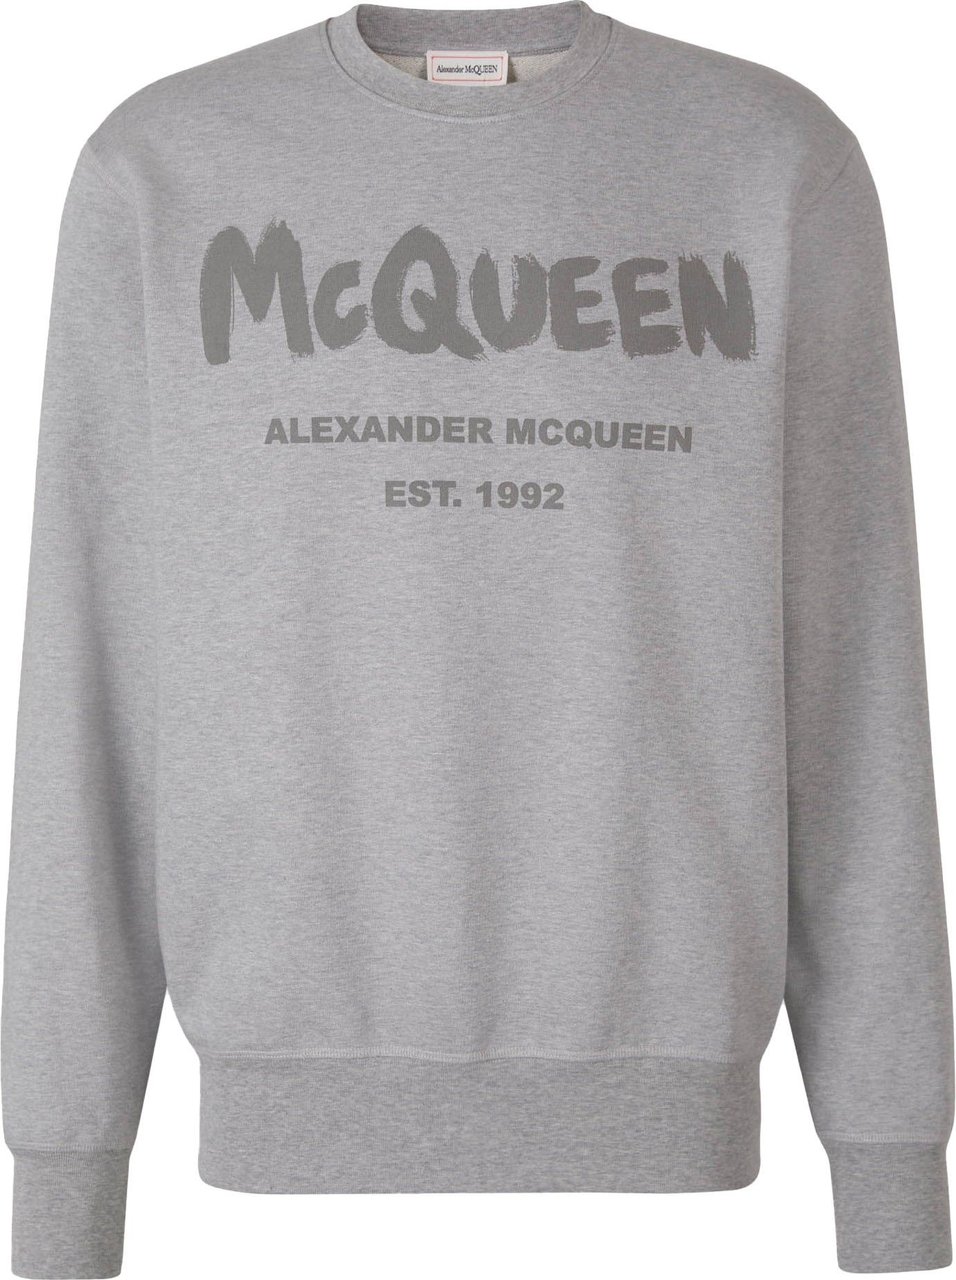 Alexander McQueen Printed Cotton Sweatshirt Grijs